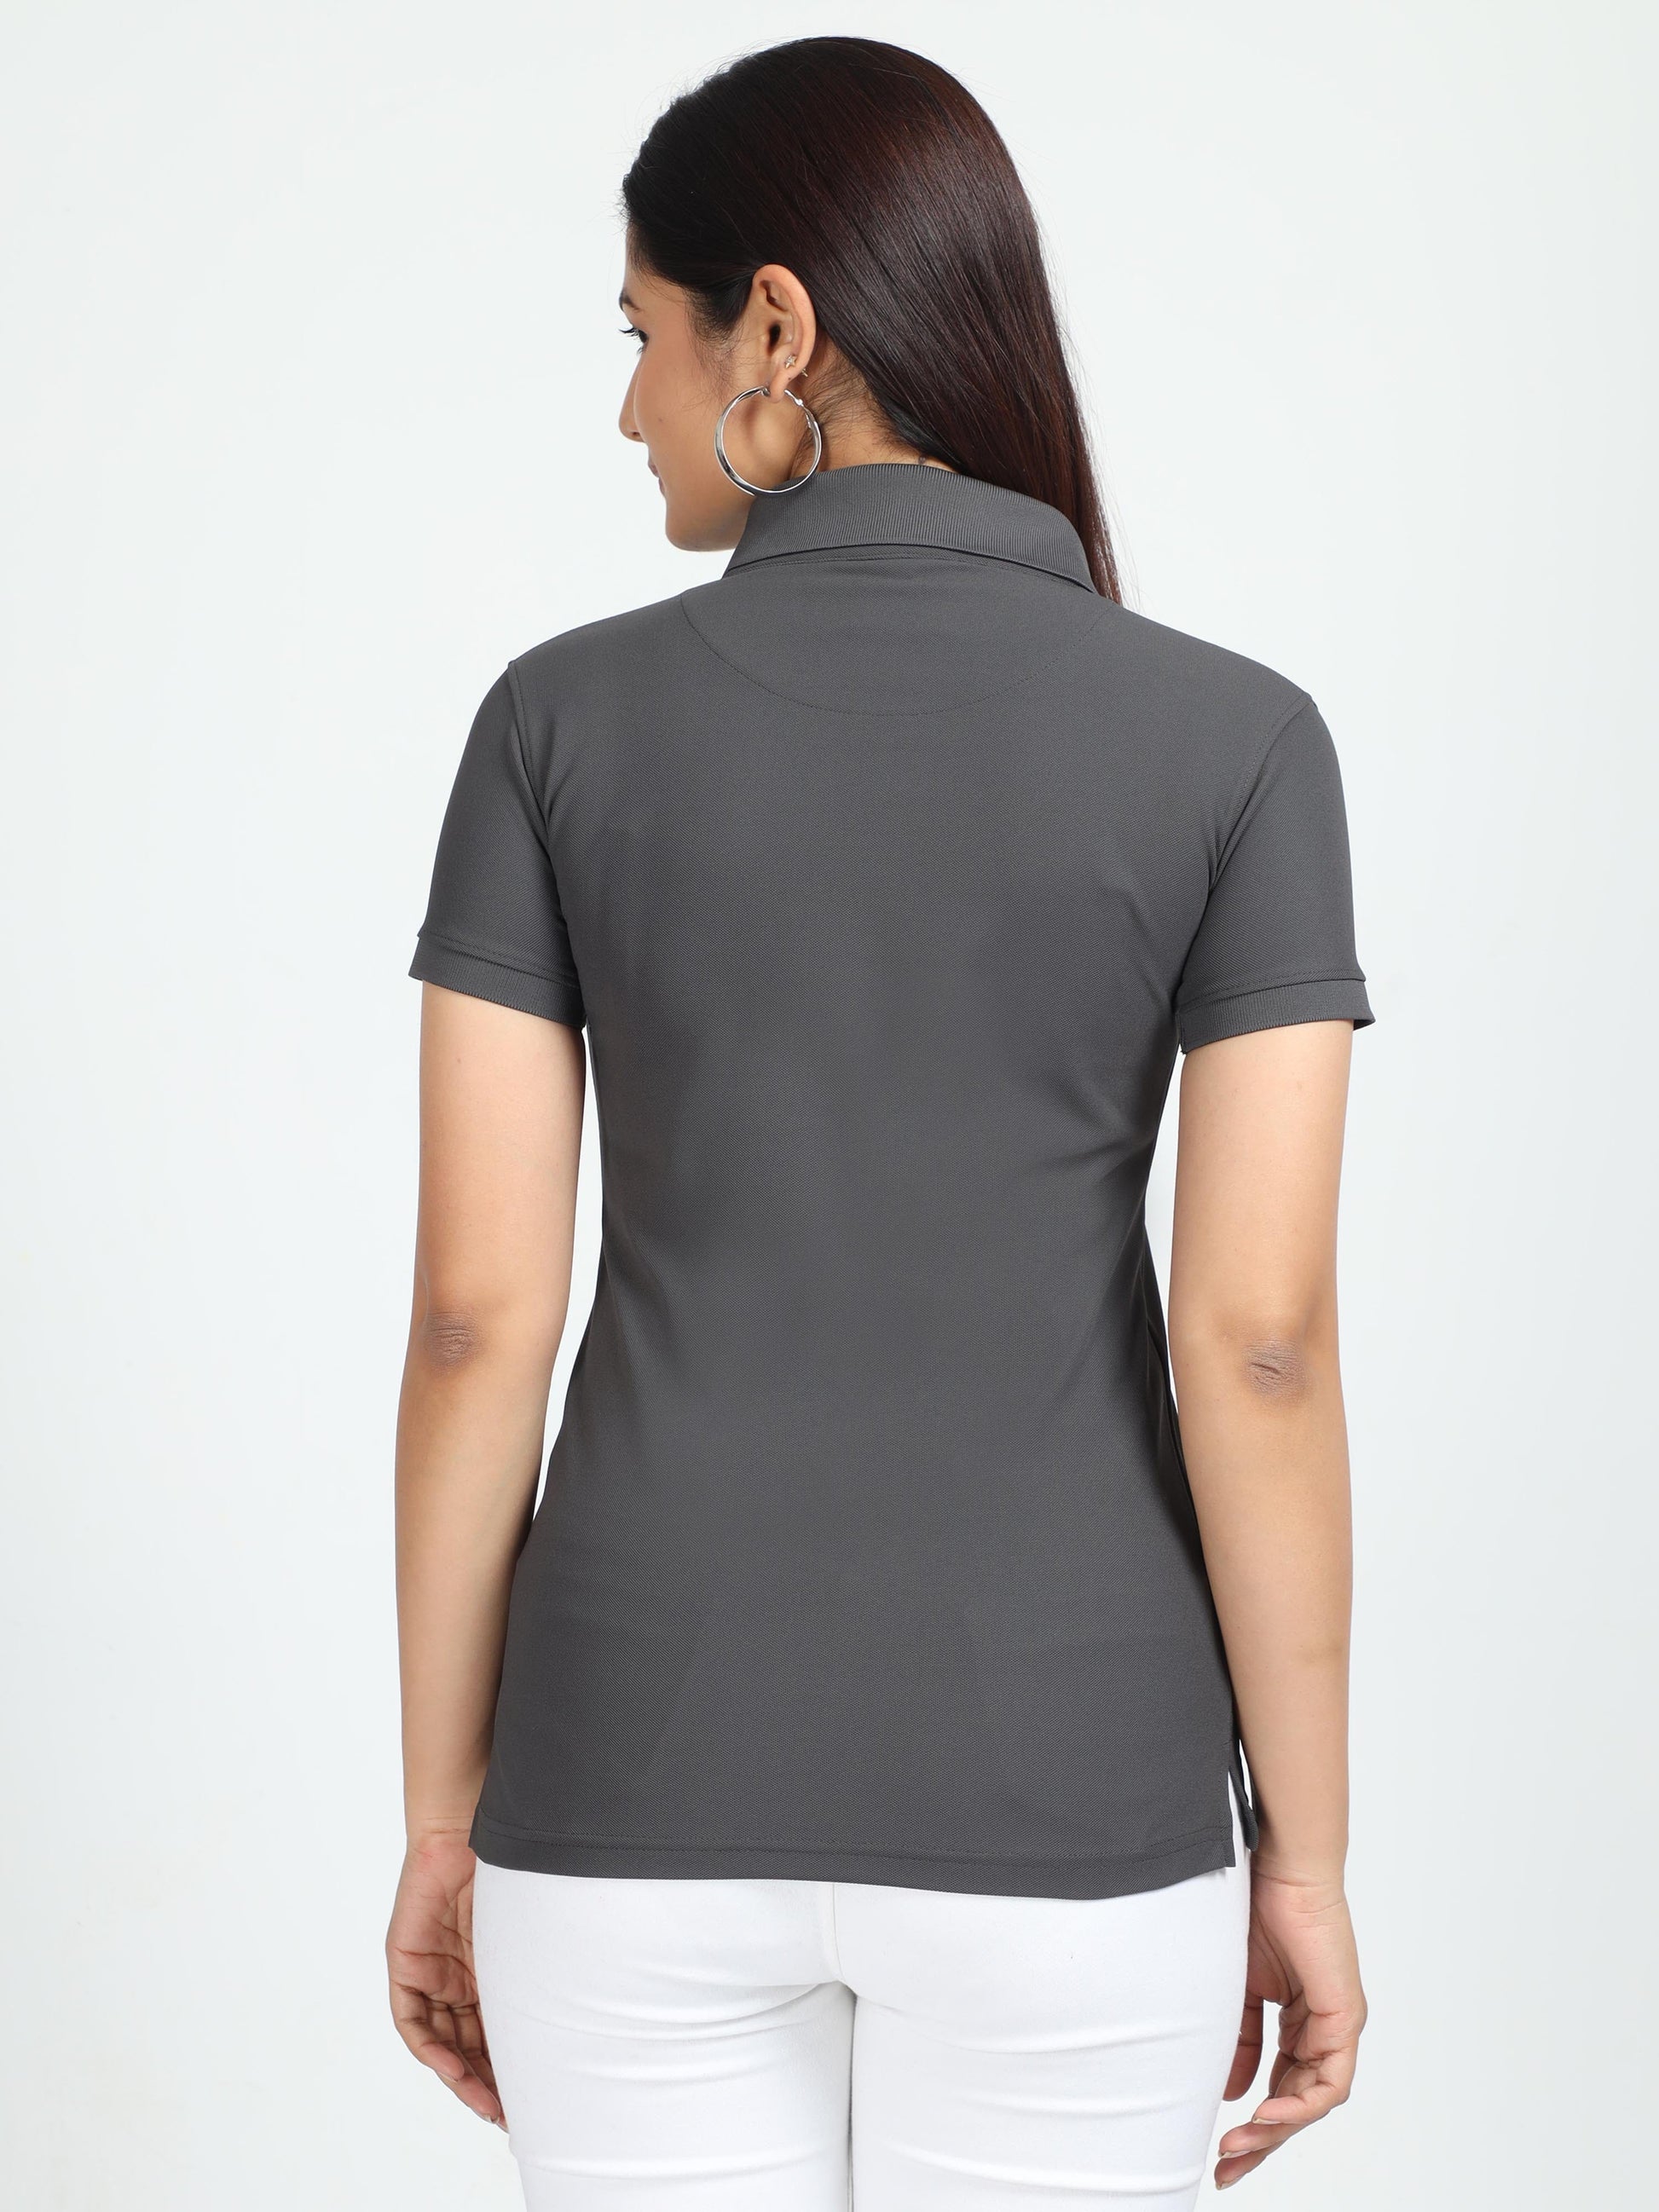 Charcoal Grey Women's Polo T-shirt